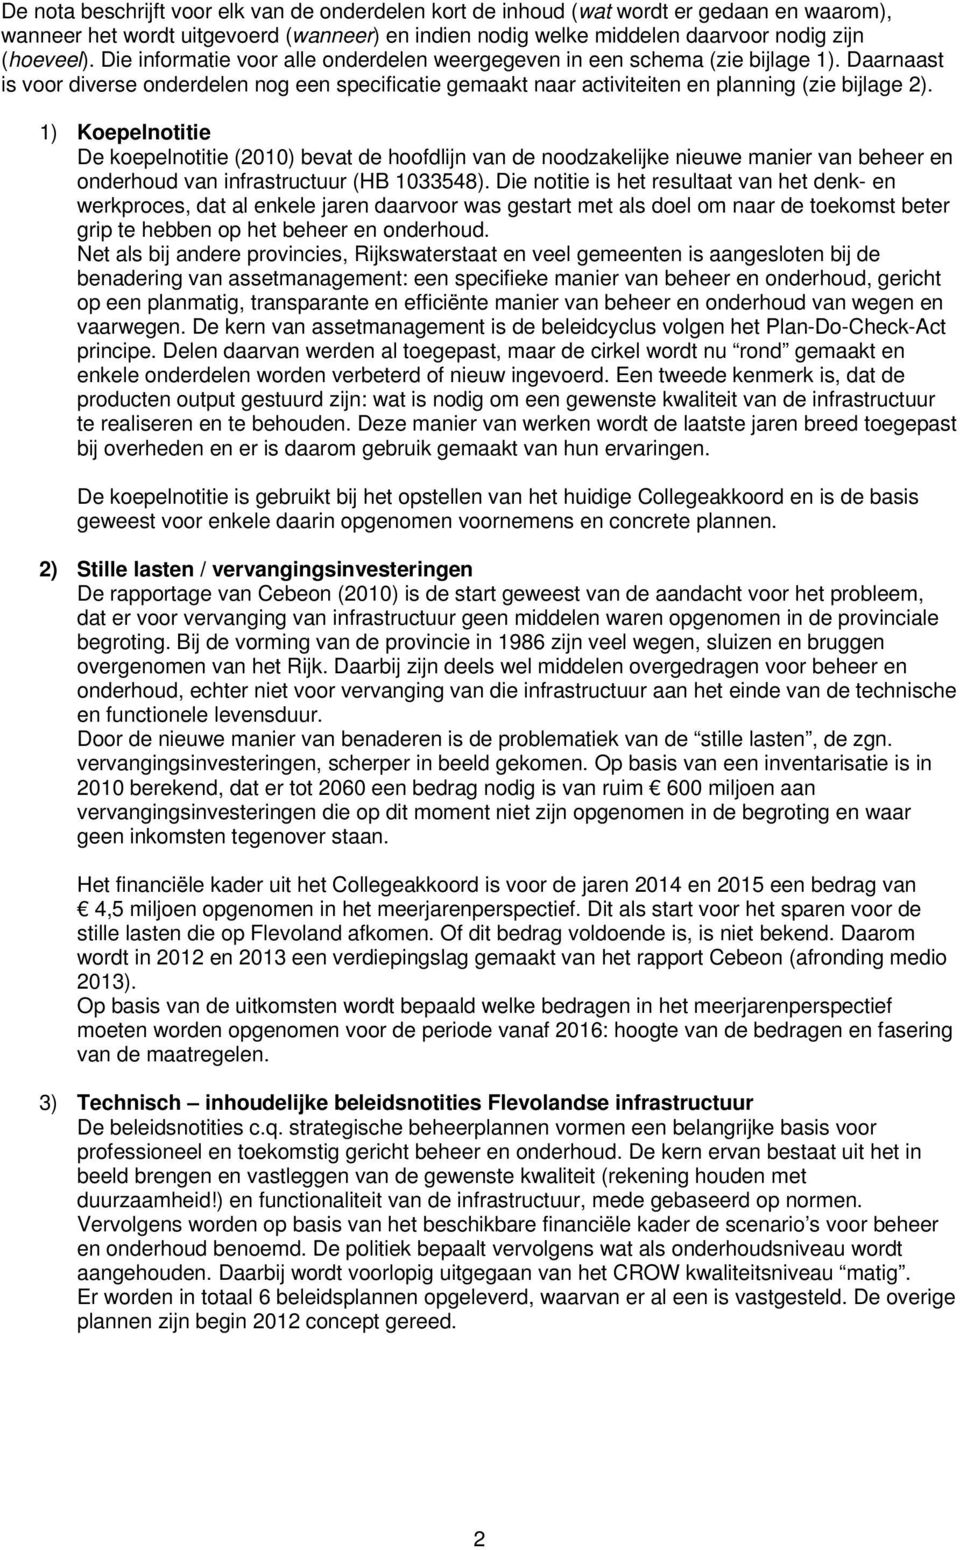 1) Koepelnotitie De koepelnotitie (2010) bevat de hoofdlijn van de noodzakelijke nieuwe manier van beheer en onderhoud van infrastructuur (HB 1033548).